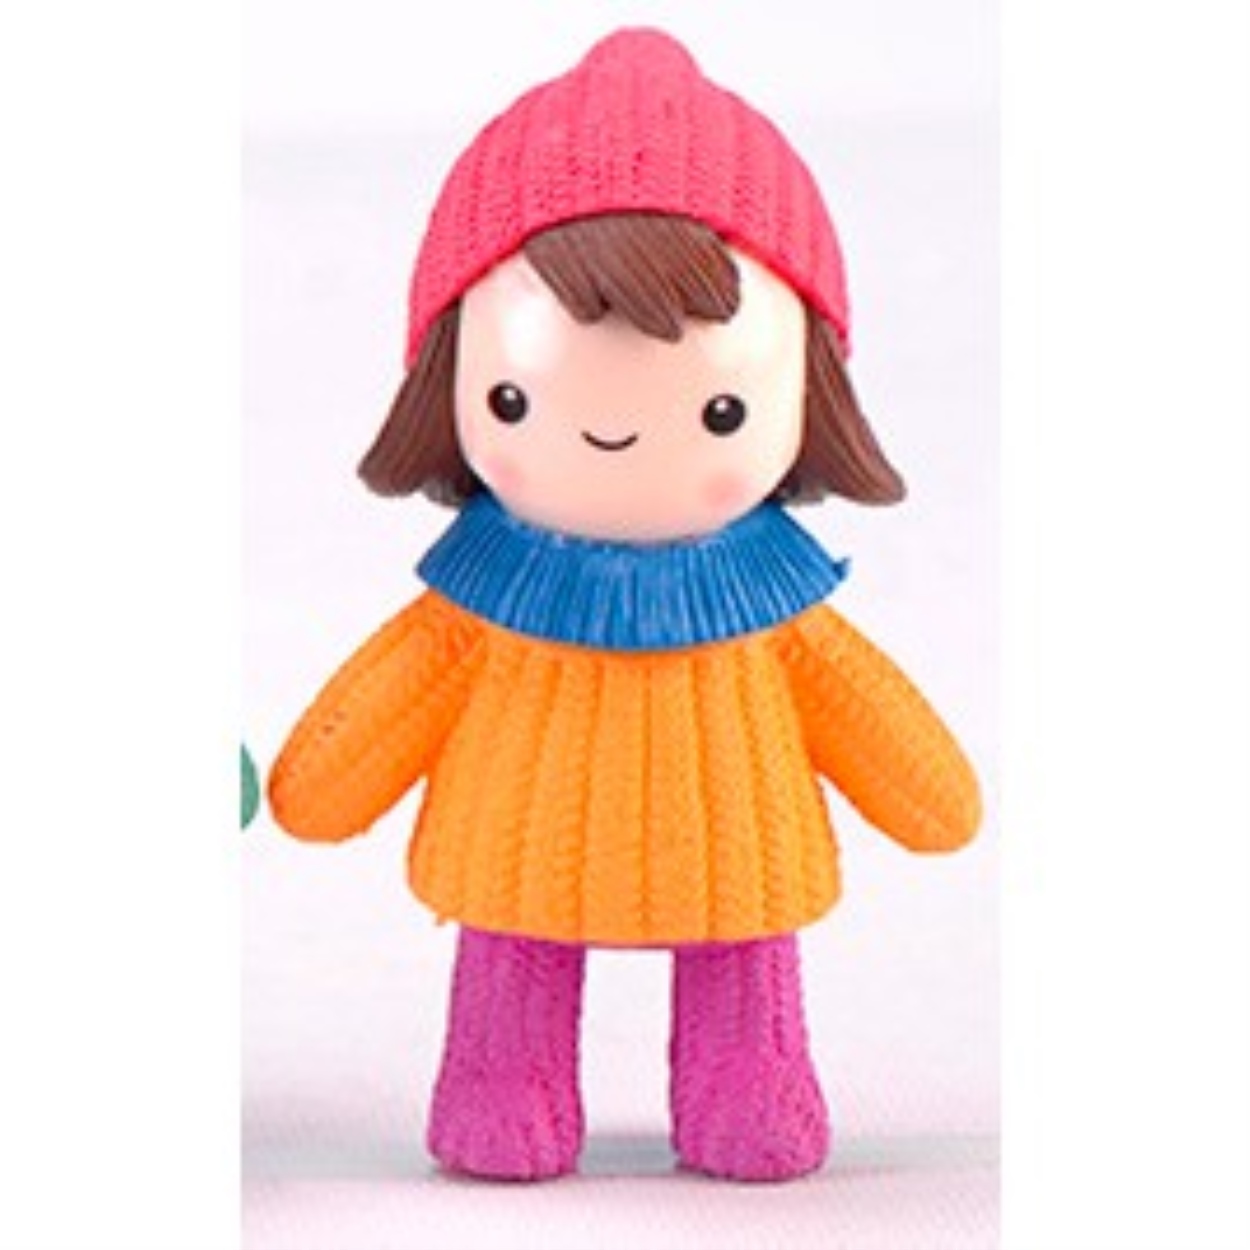 [MC921] ตุ๊กตุ่นจิ๋ว เด็กผู้หญิง ผมสั้น สวมหมวกไหมพรม (1 ตัว ราคา 15, 25 บาท)